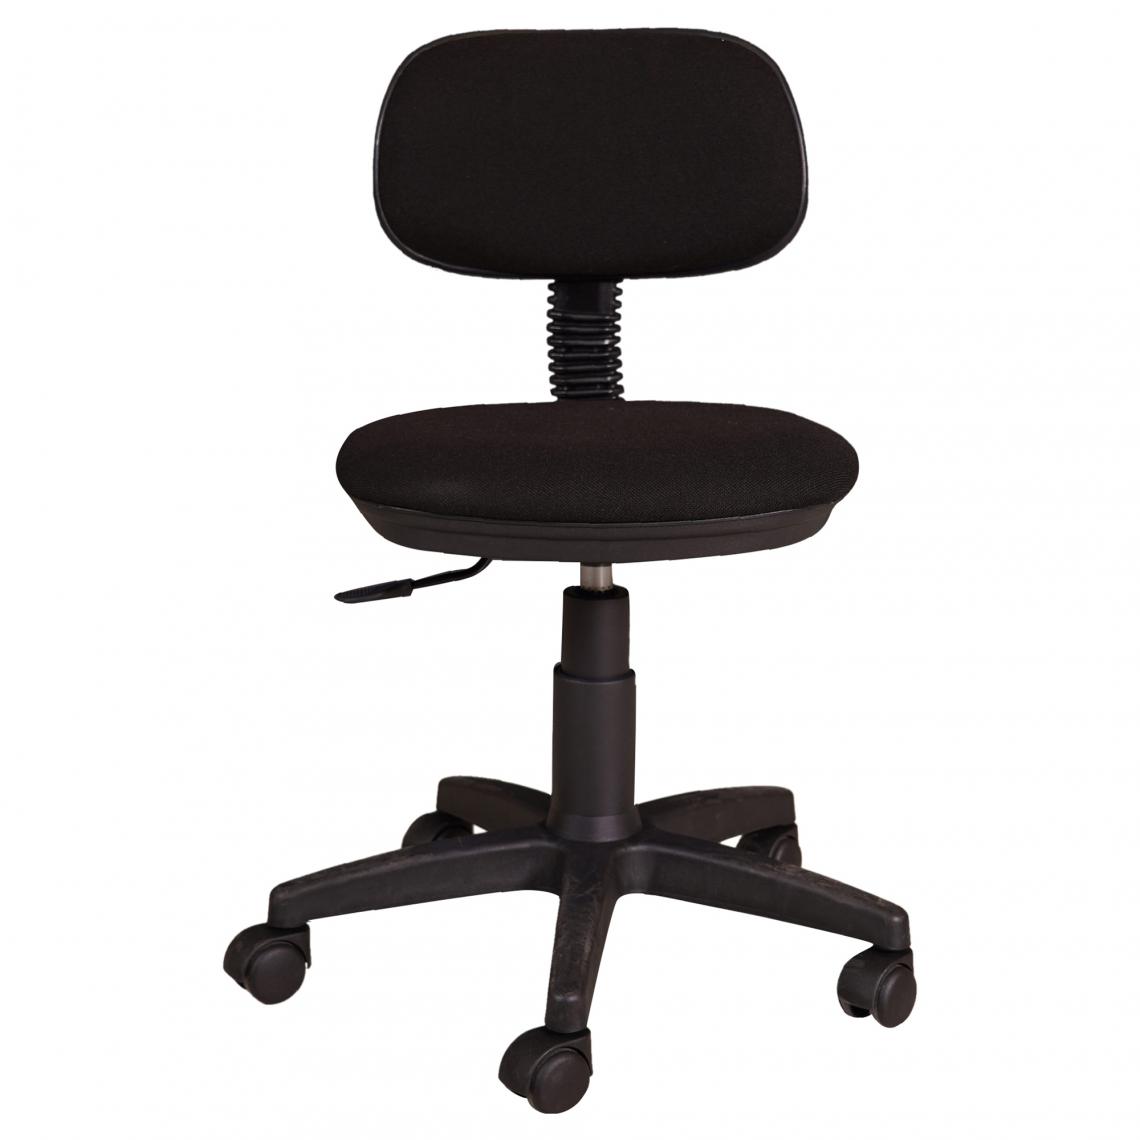 Alter - Chaise de bureau sur roulettes, Chaise releveuse, Chaise rembourrée en tissu, 58x53h77 / 87 cm, couleur noire - Chaises